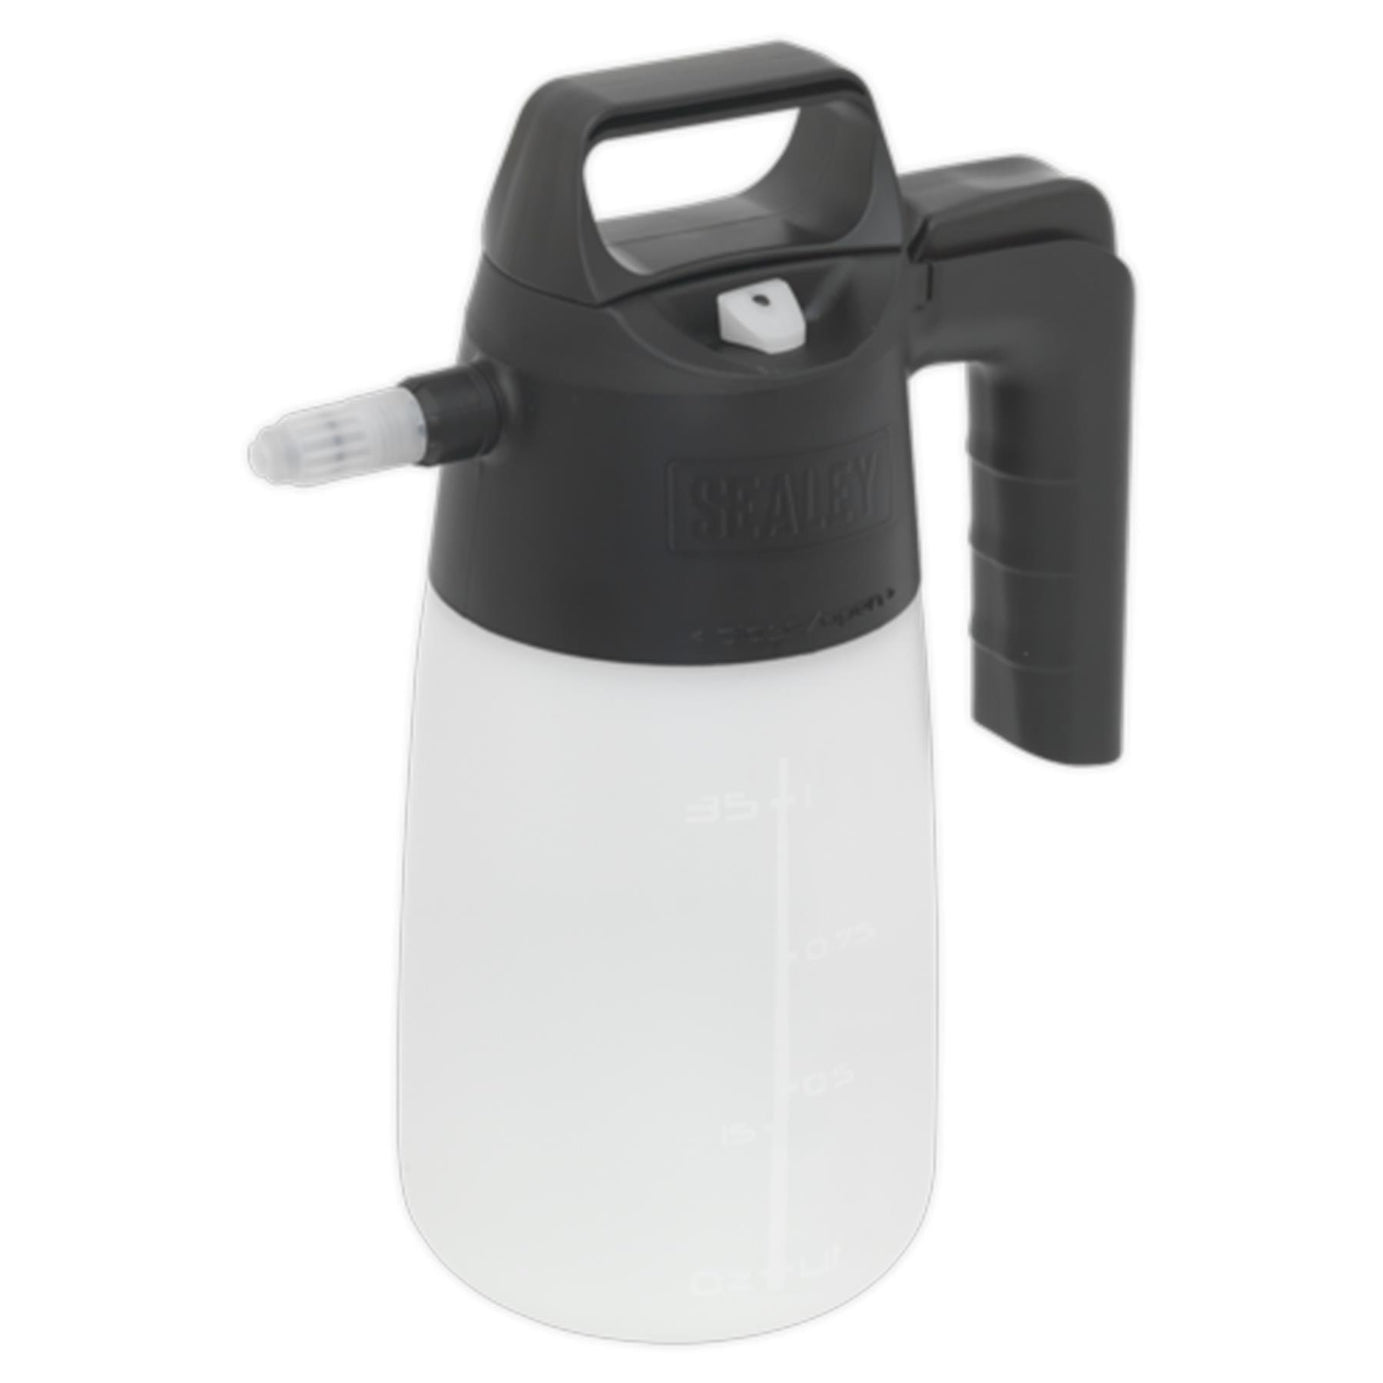 Sealey Premier Industrial Detergent Pressure Sprayer